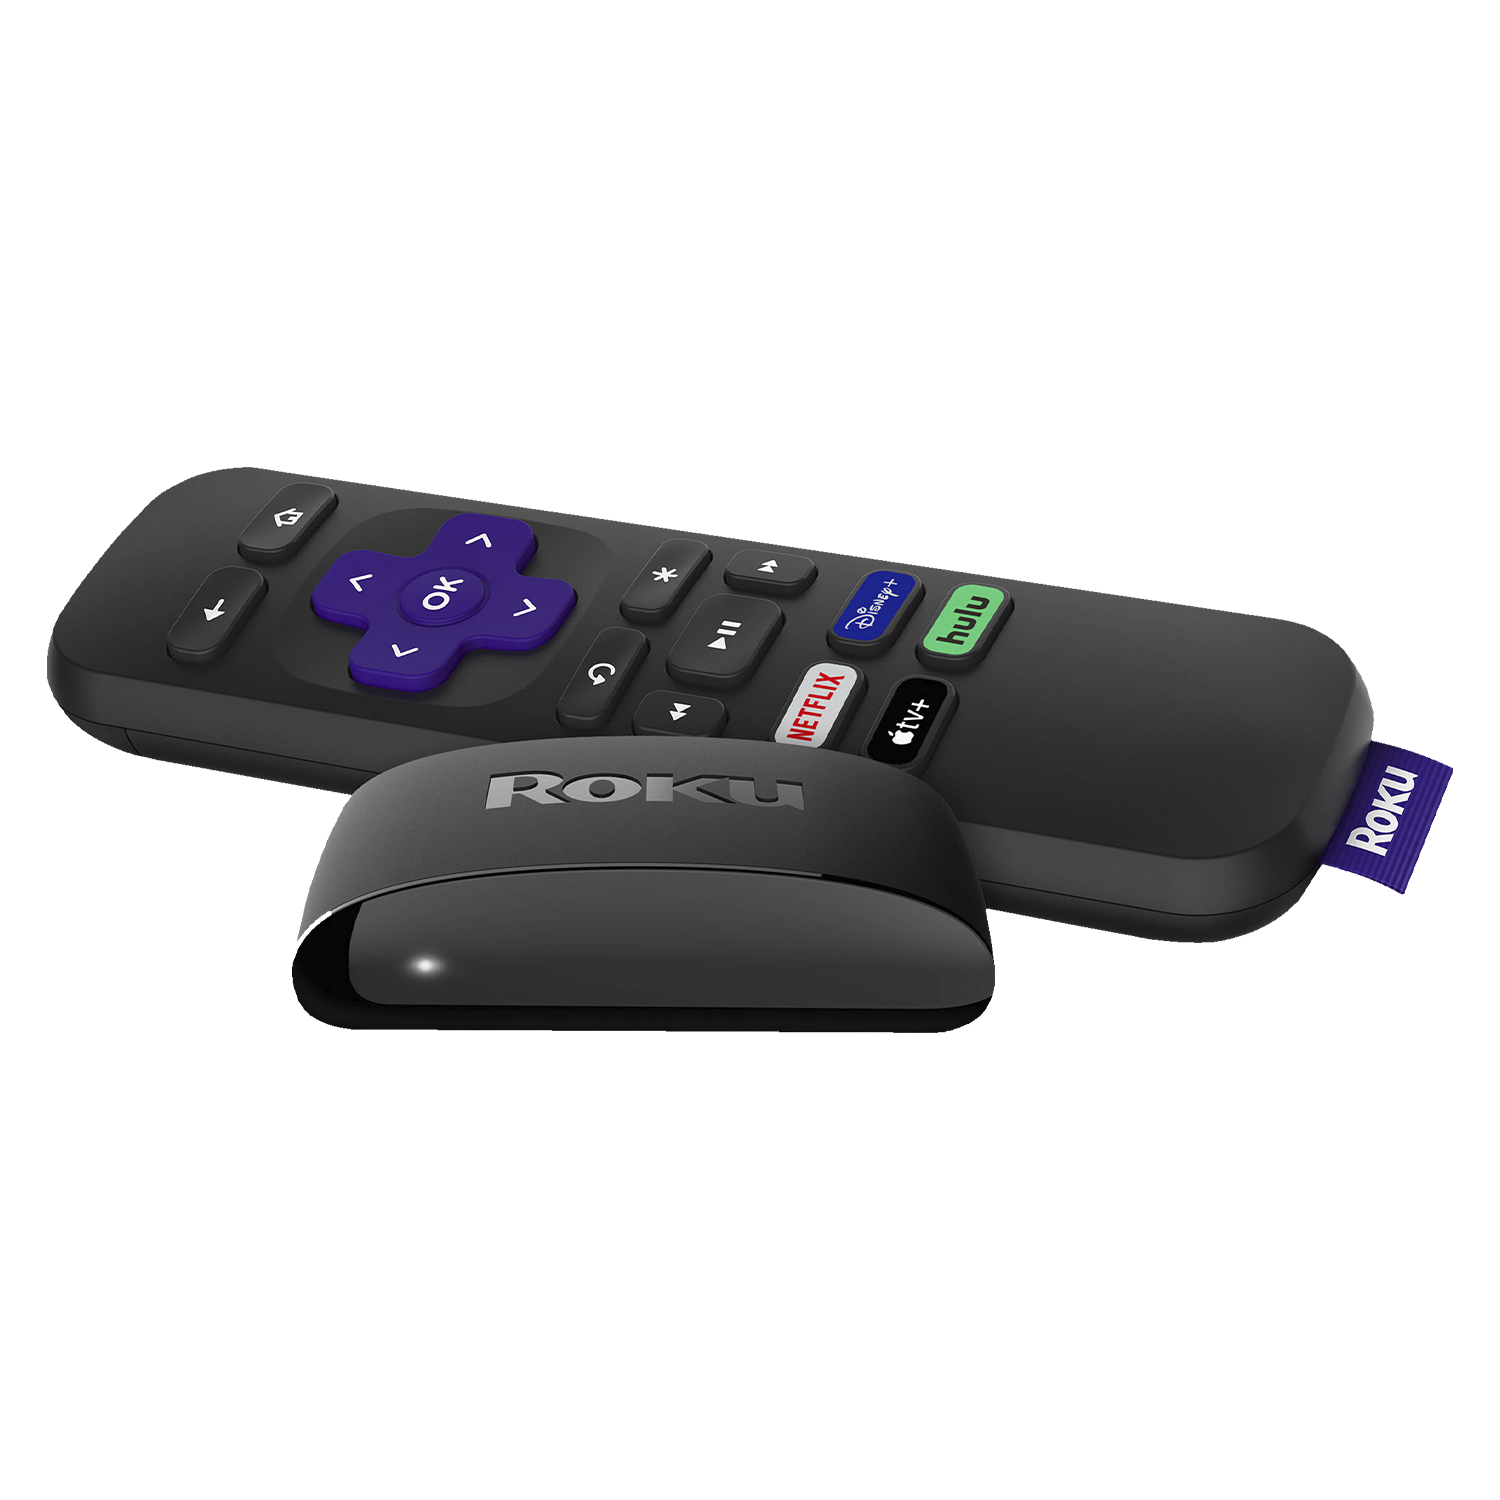 Media Player Roku Express Streaming HD / HDMI / Wi-Fi - Preto (3930R)
